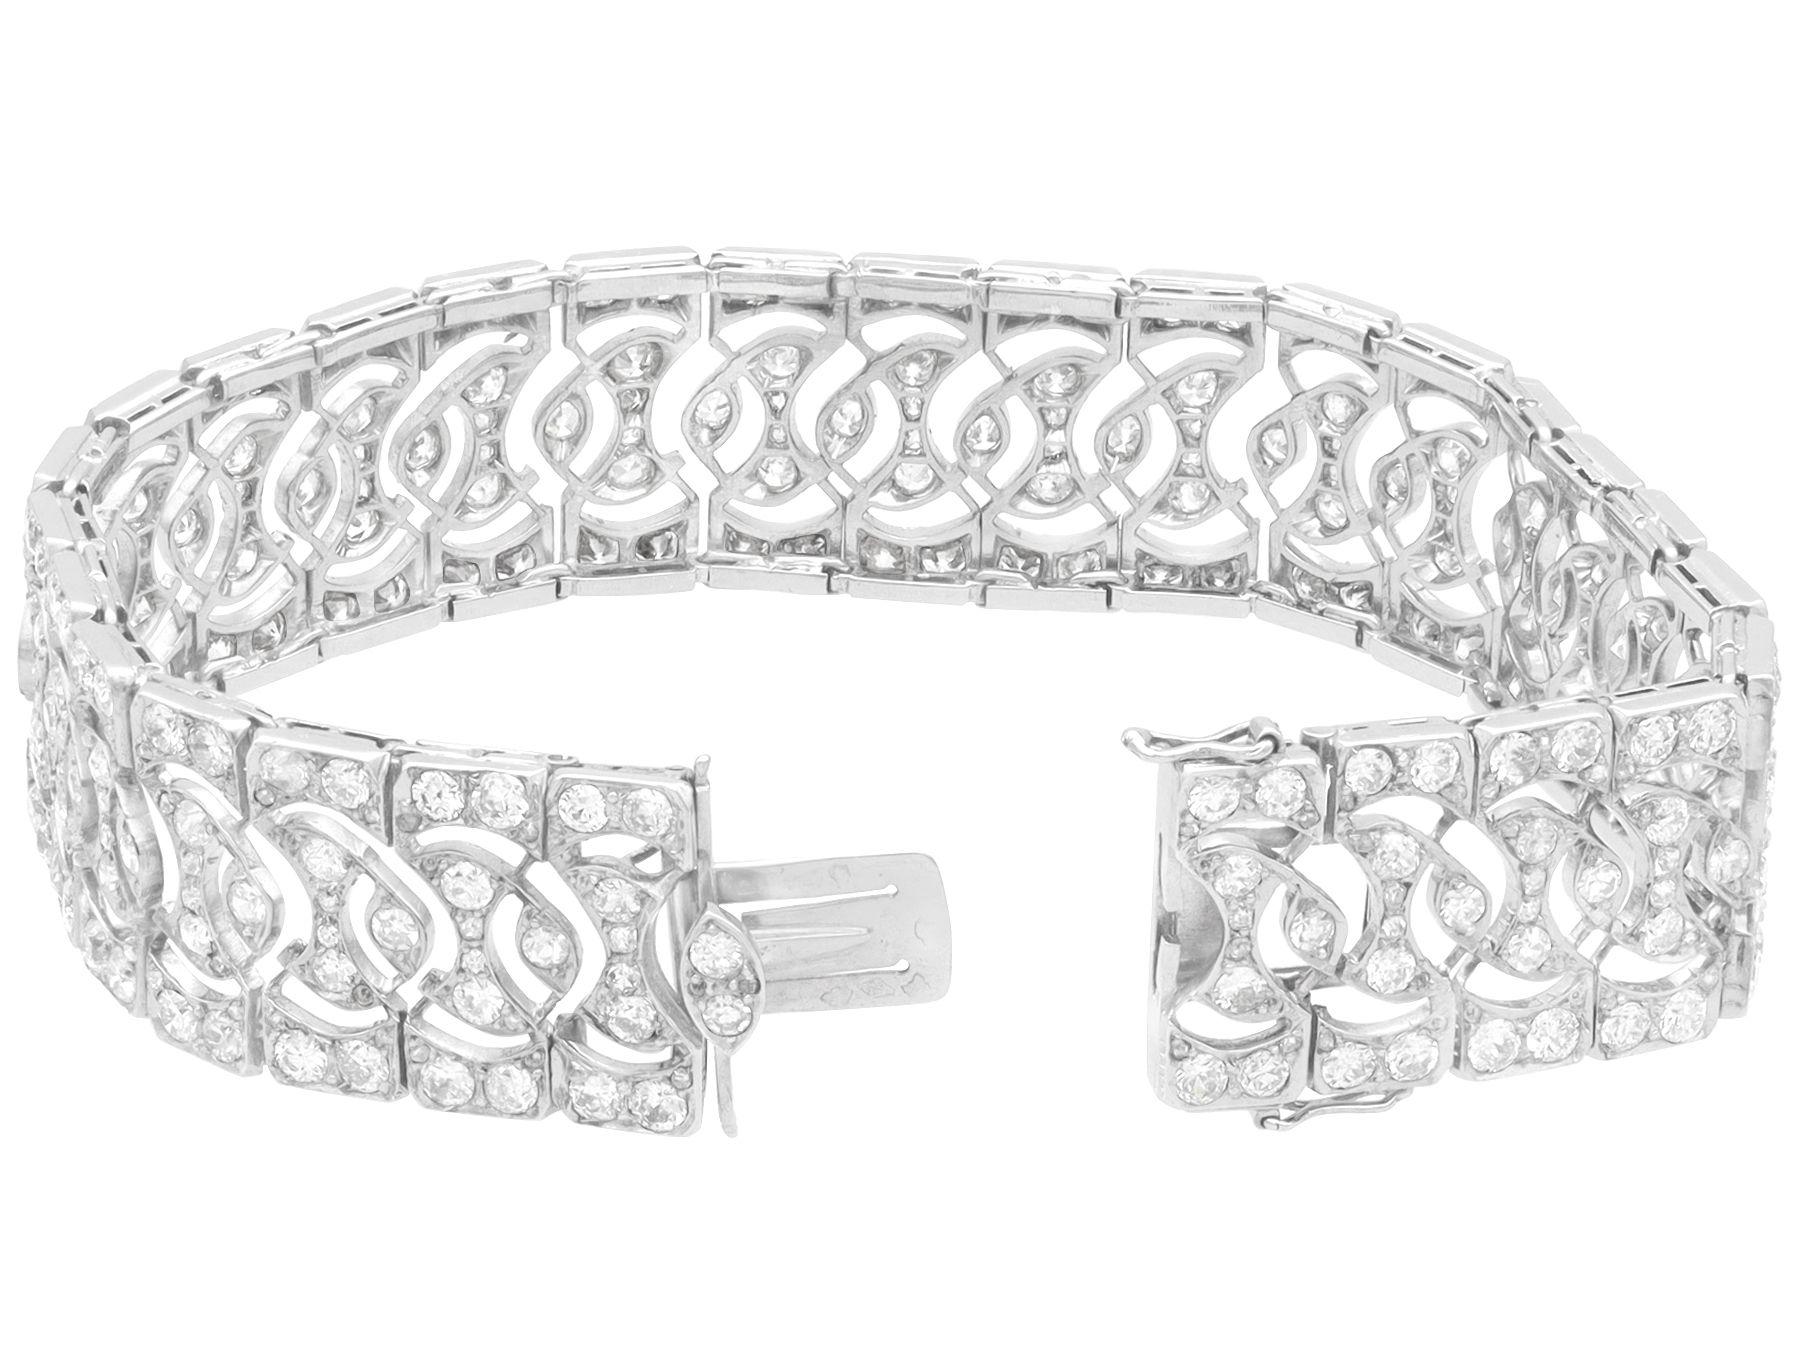 Antique Art Deco French 10.16 Carat Diamond and Platinum Bracelet For Sale 2